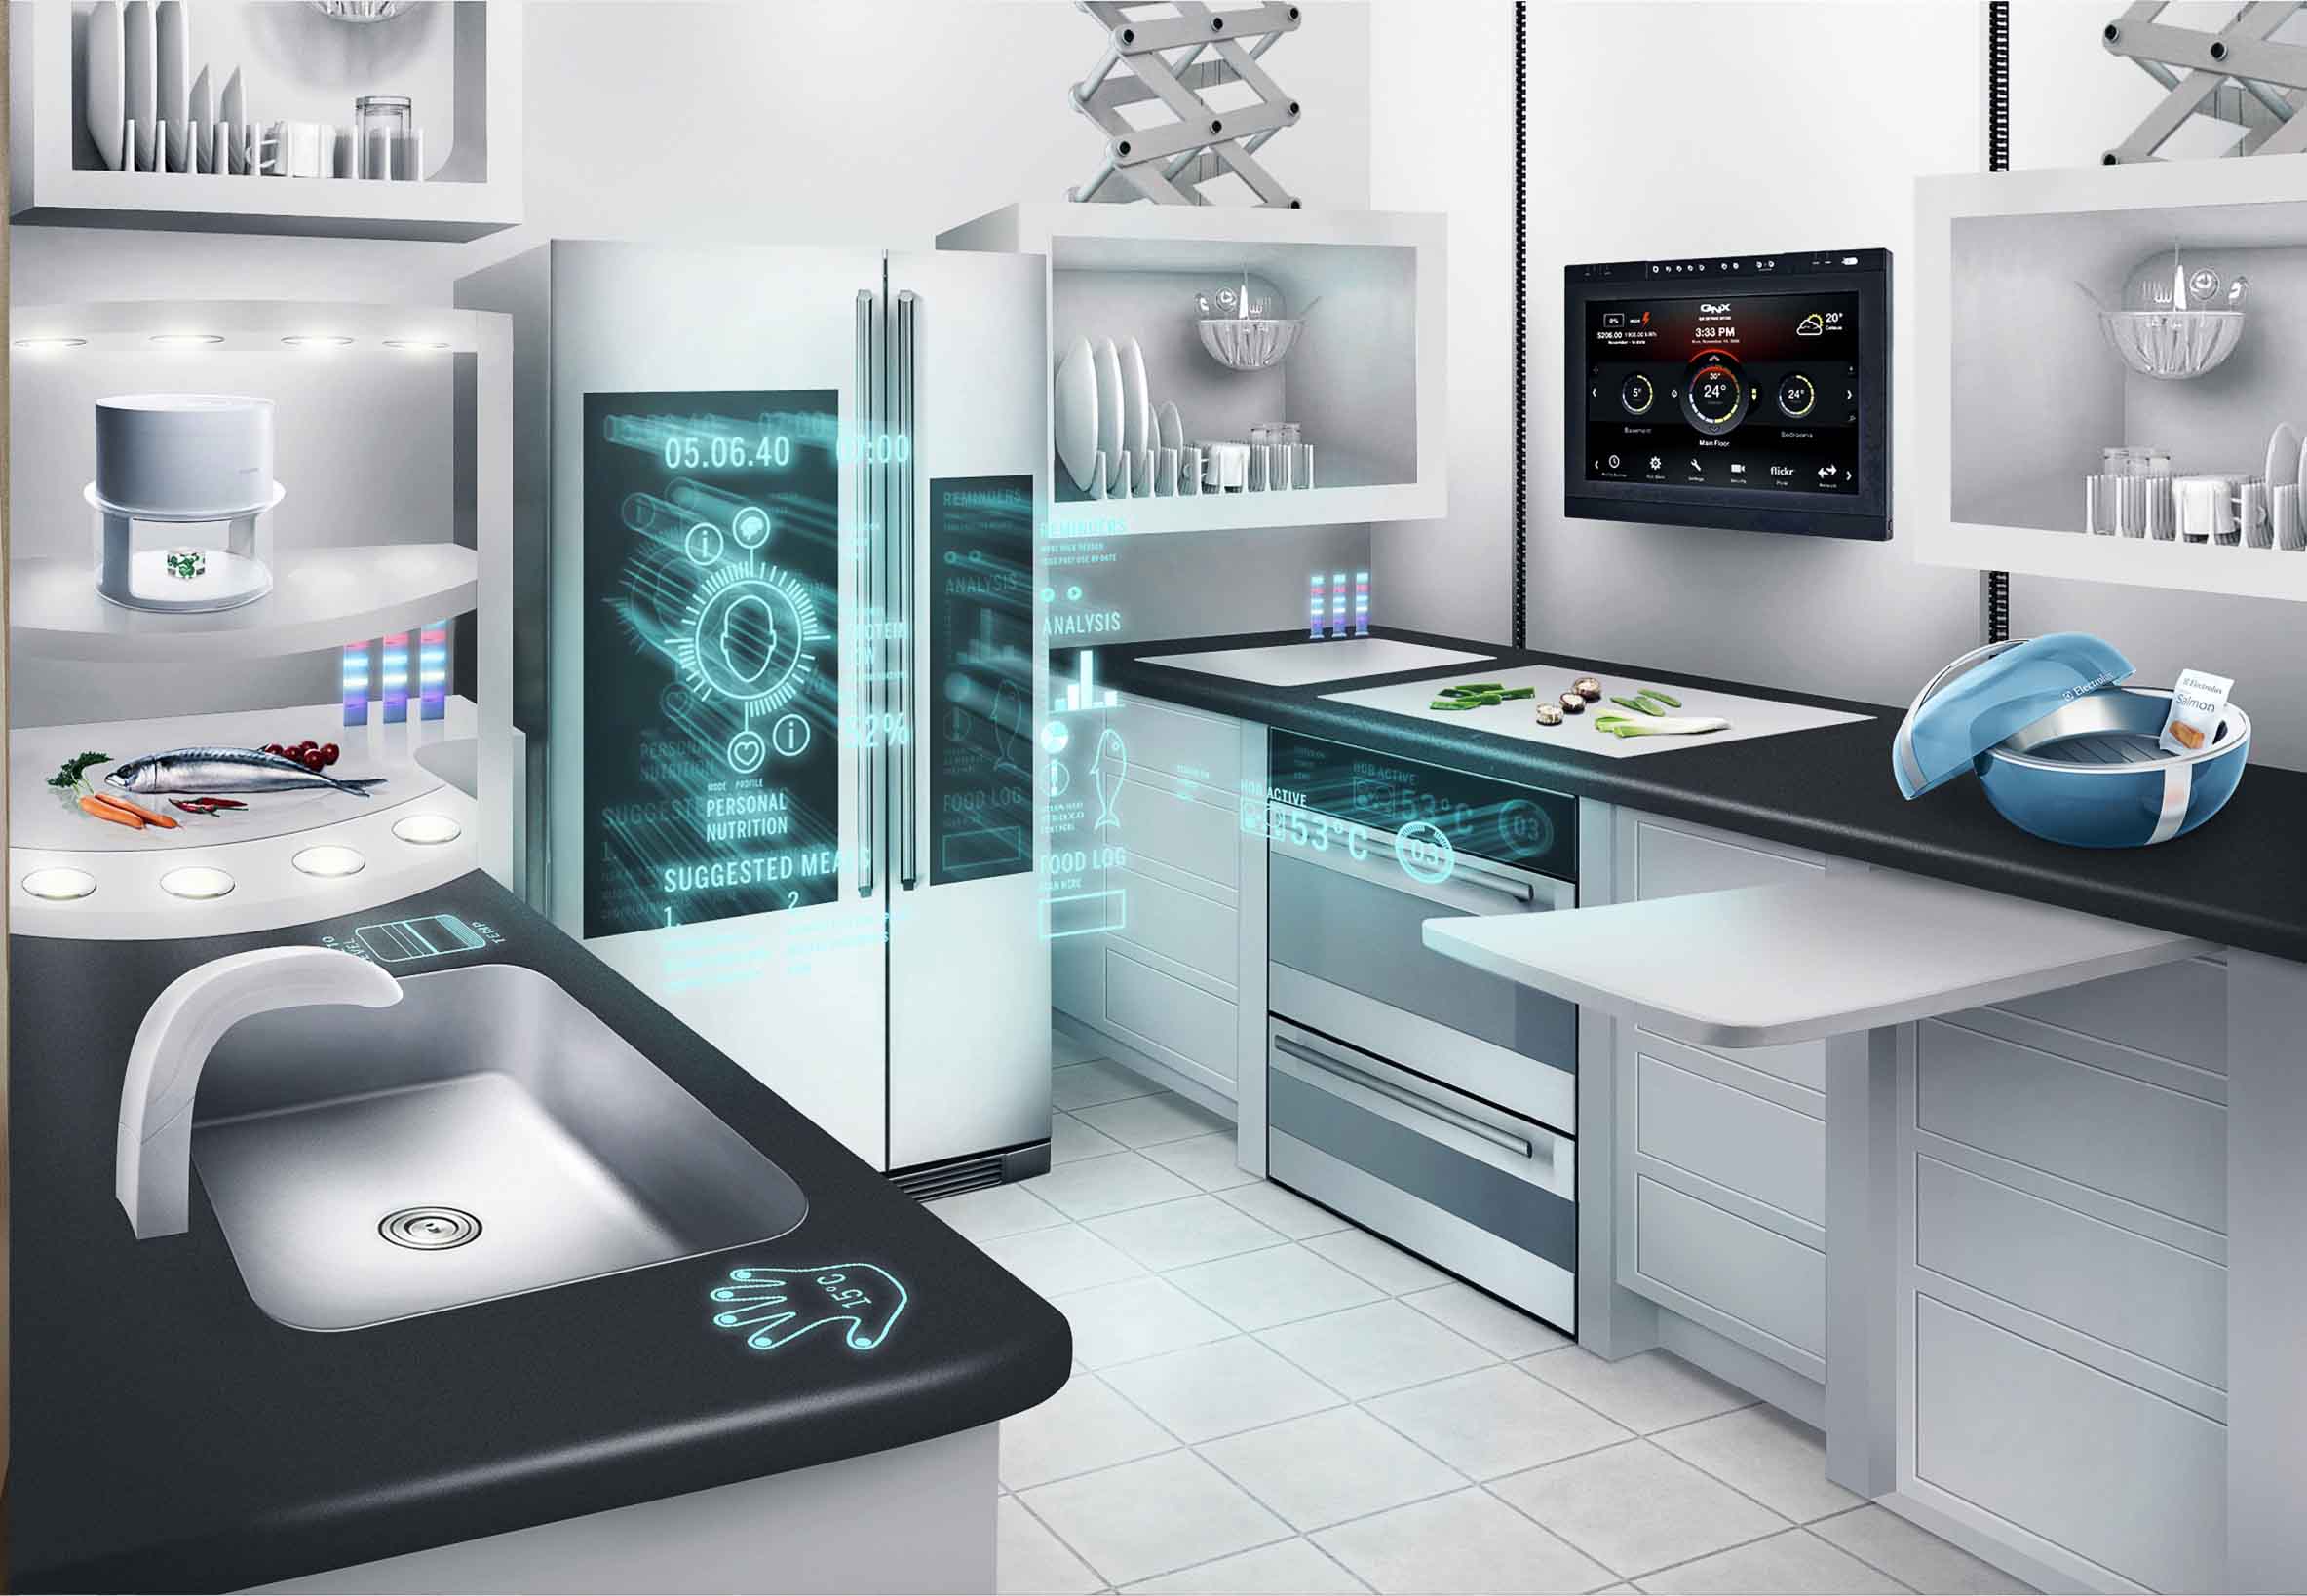 The Smart Home of the Future – Amazing Futuristic concept